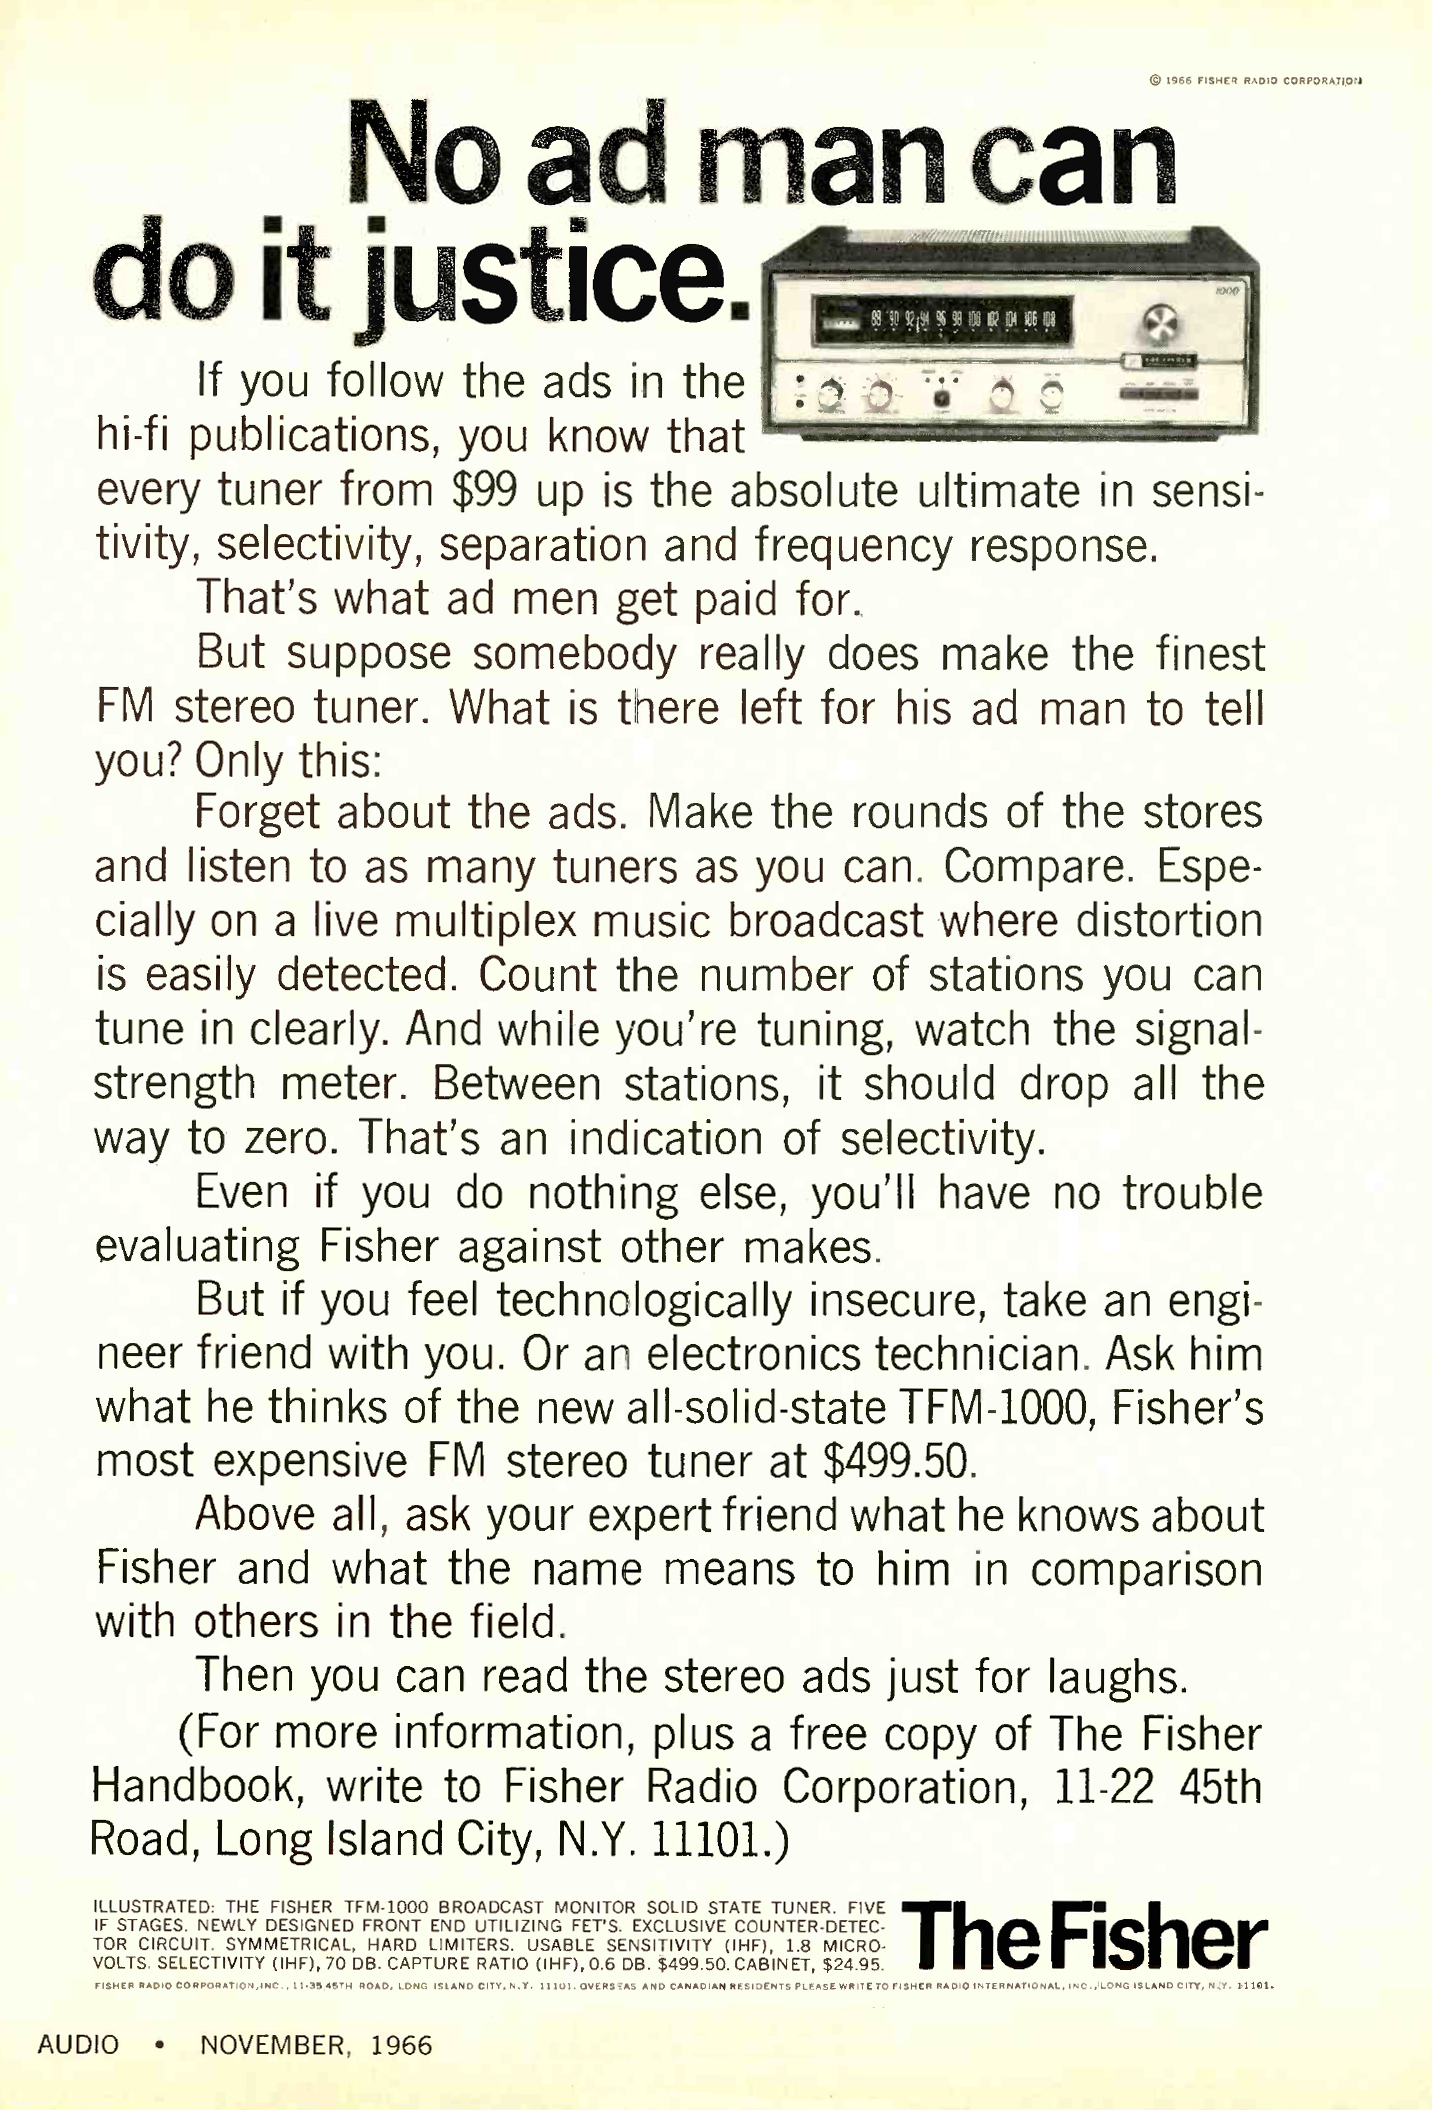 Fisher TFM-1000-Werbung-1966.jpg